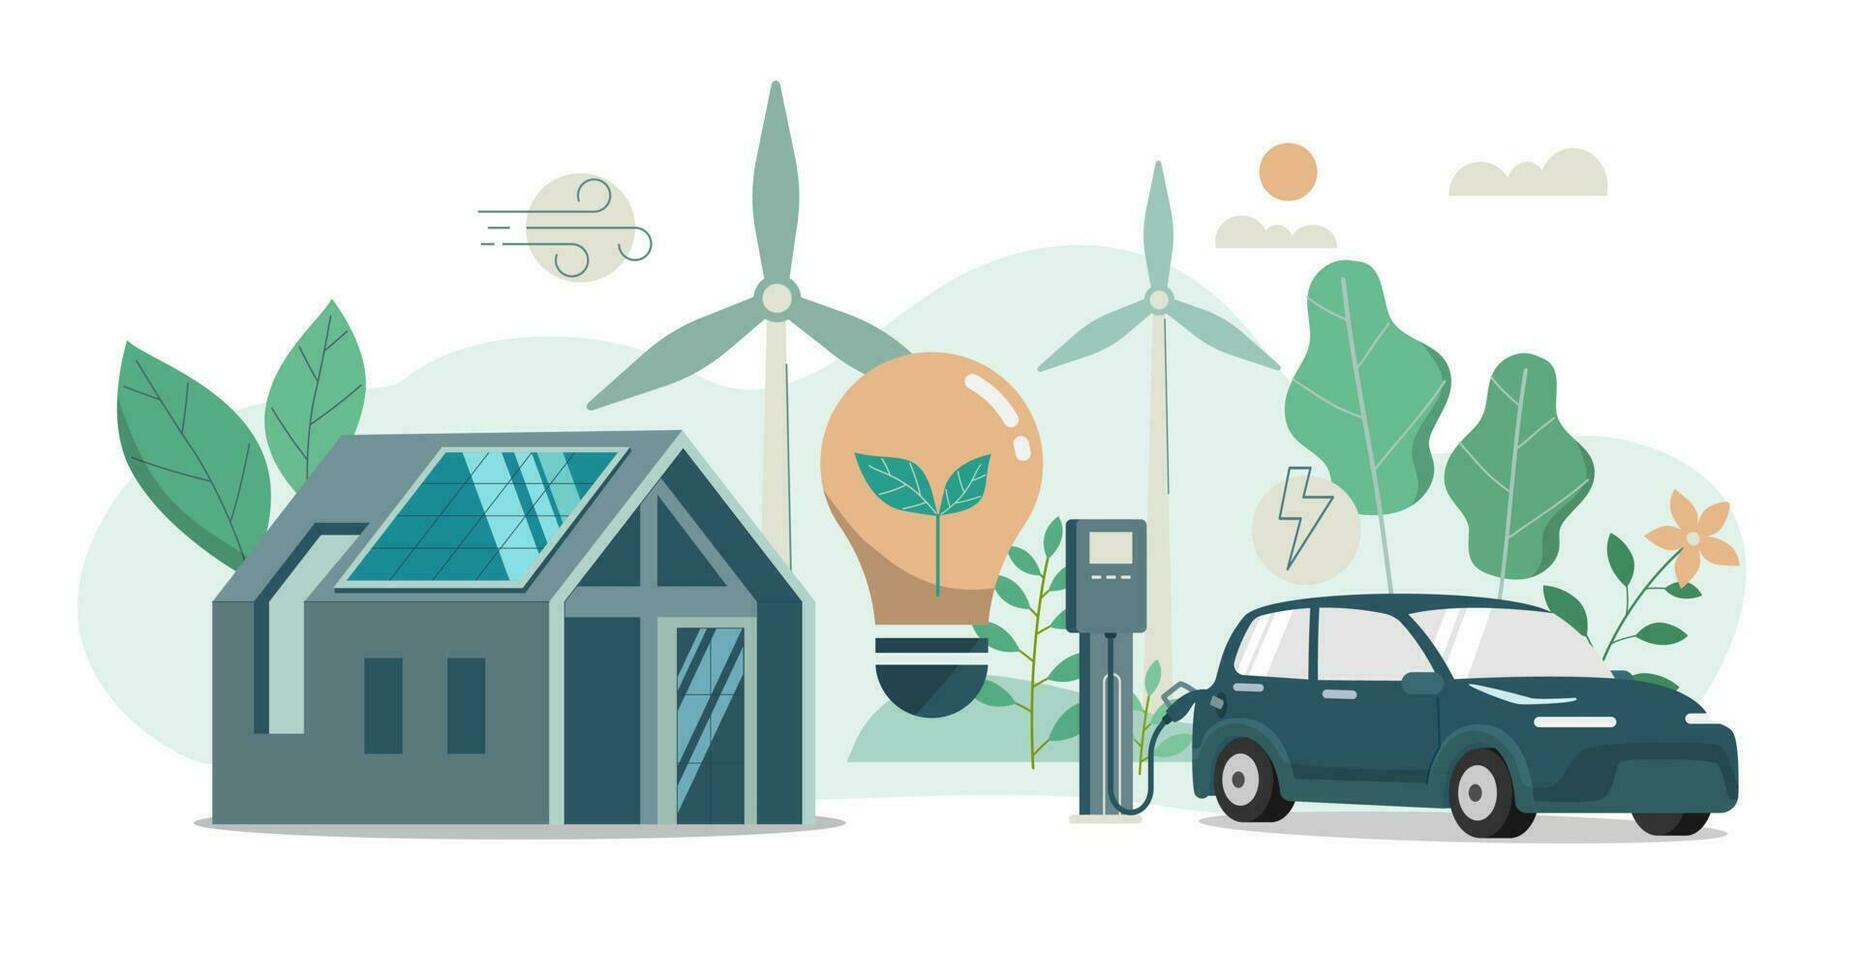 moderno ecologia Casa e solare energia pannelli, vento turbine creare elettricità, elettrico auto ricarica stazione, vettore